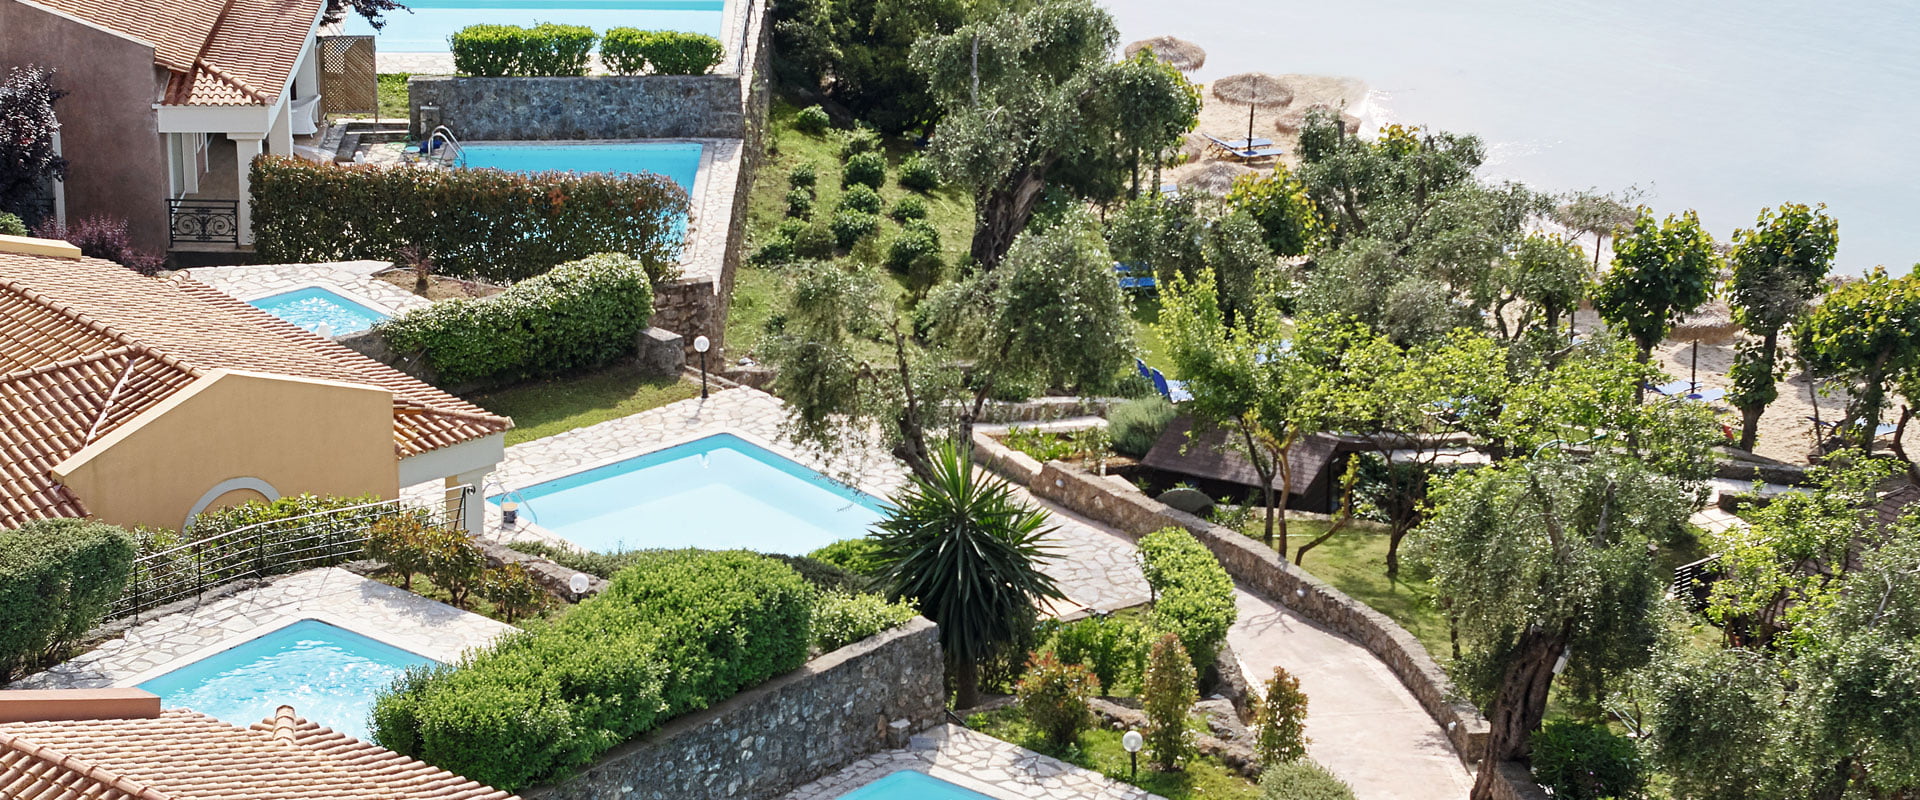 Corfu Luxury Hotels Eva Palace 03